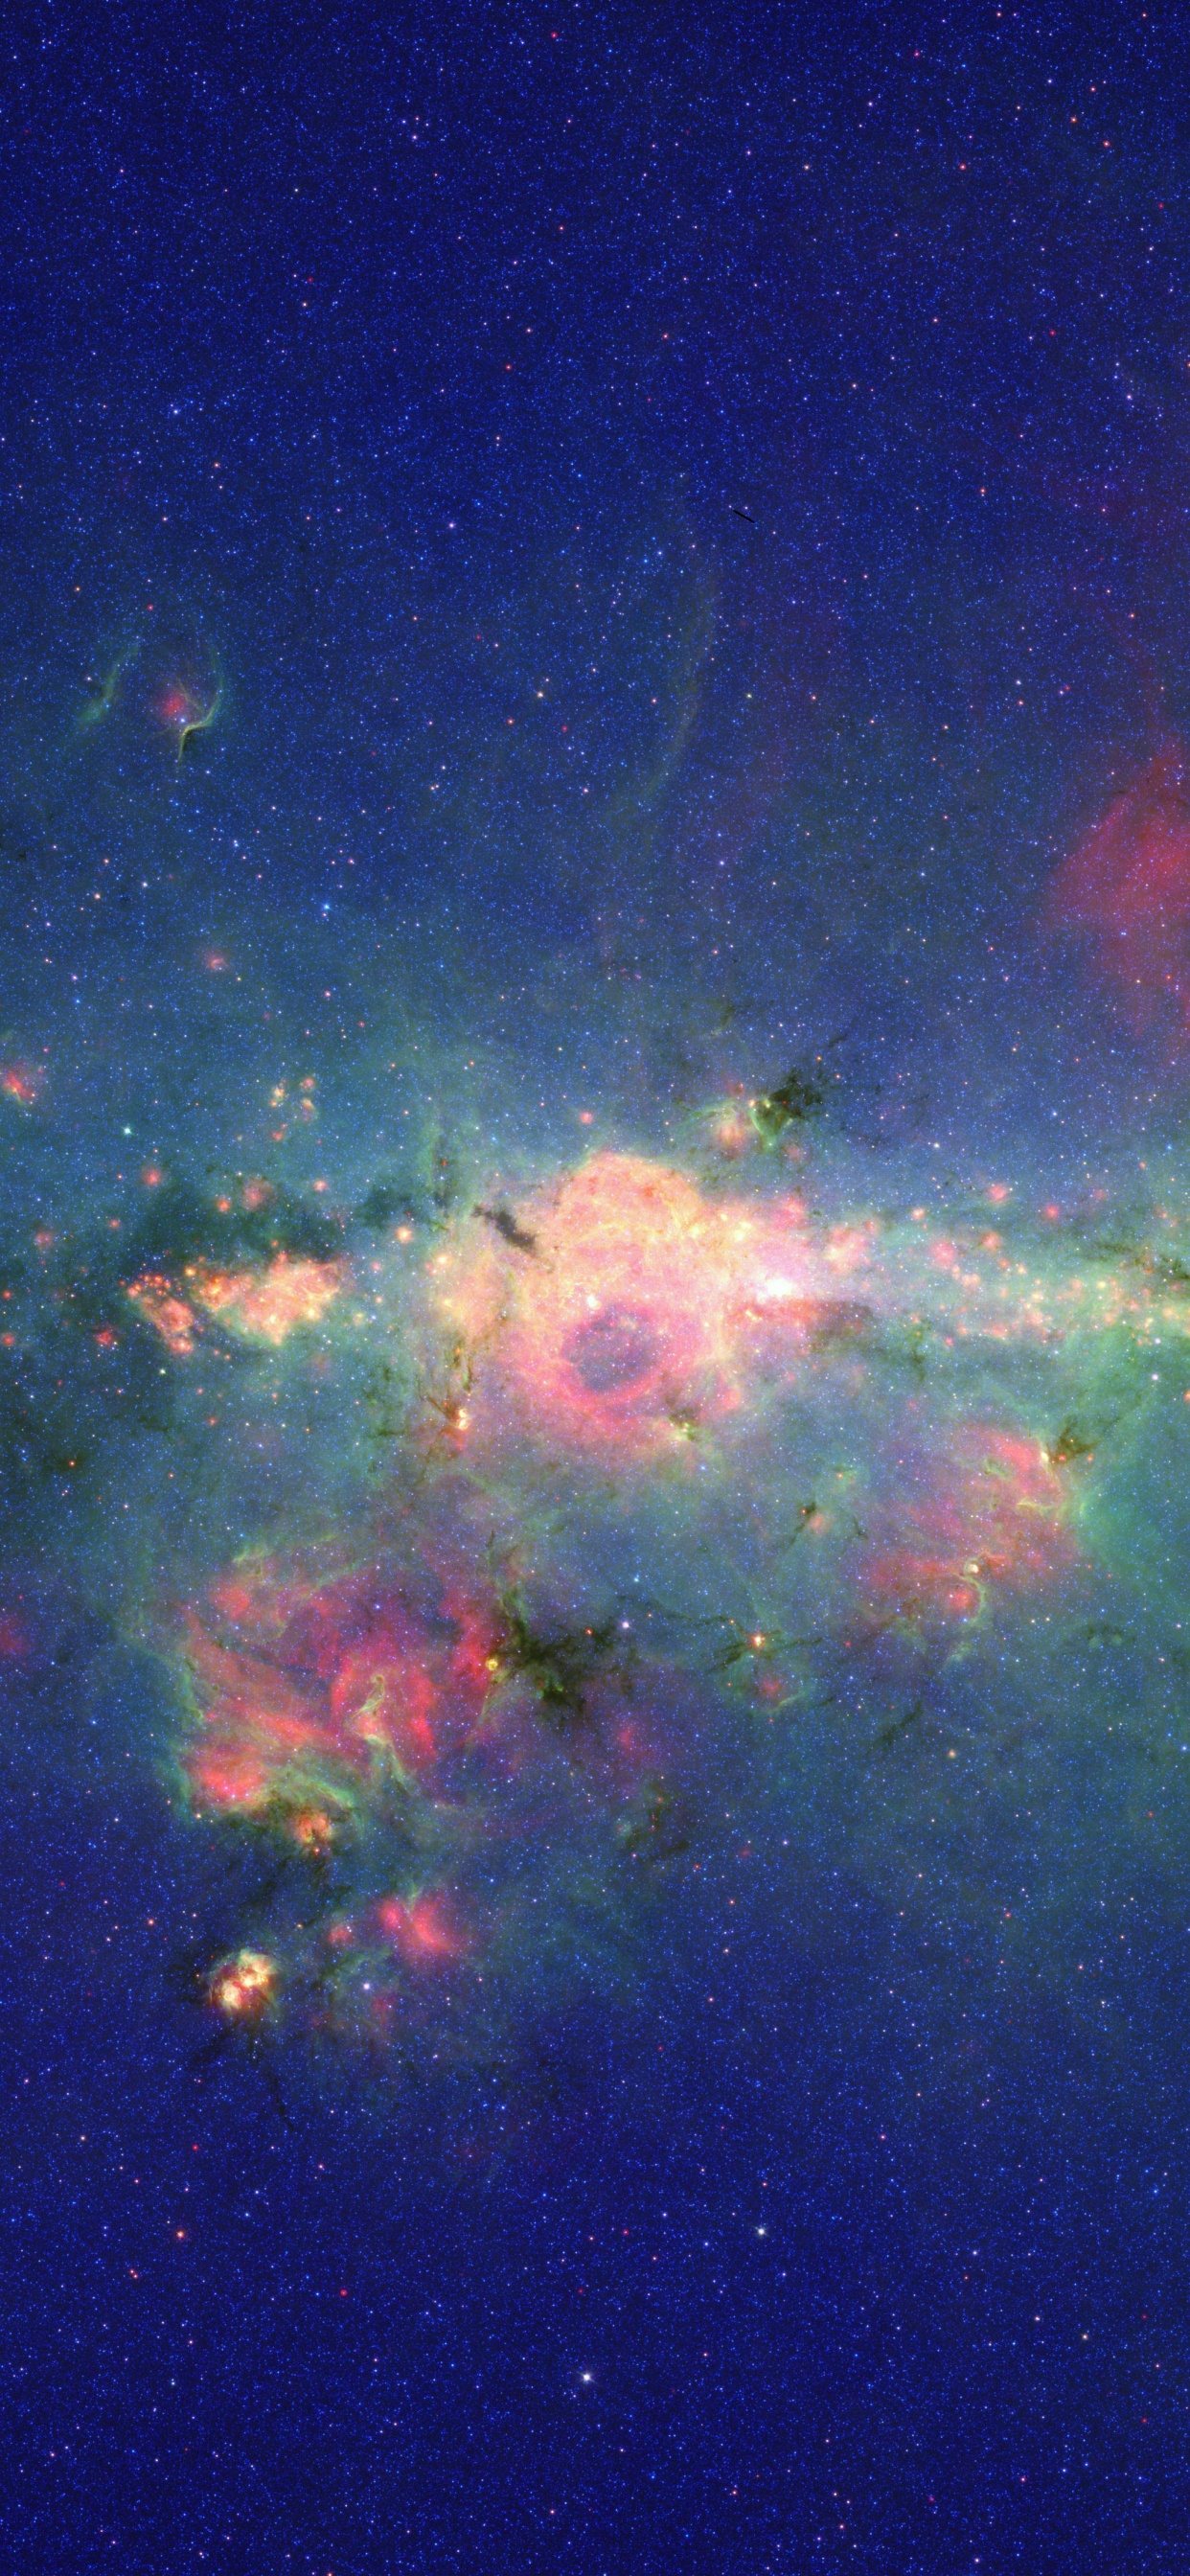 银河系, 斯皮策太空望远镜, 明星, 气氛, 天文学对象 壁纸 1242x2688 允许